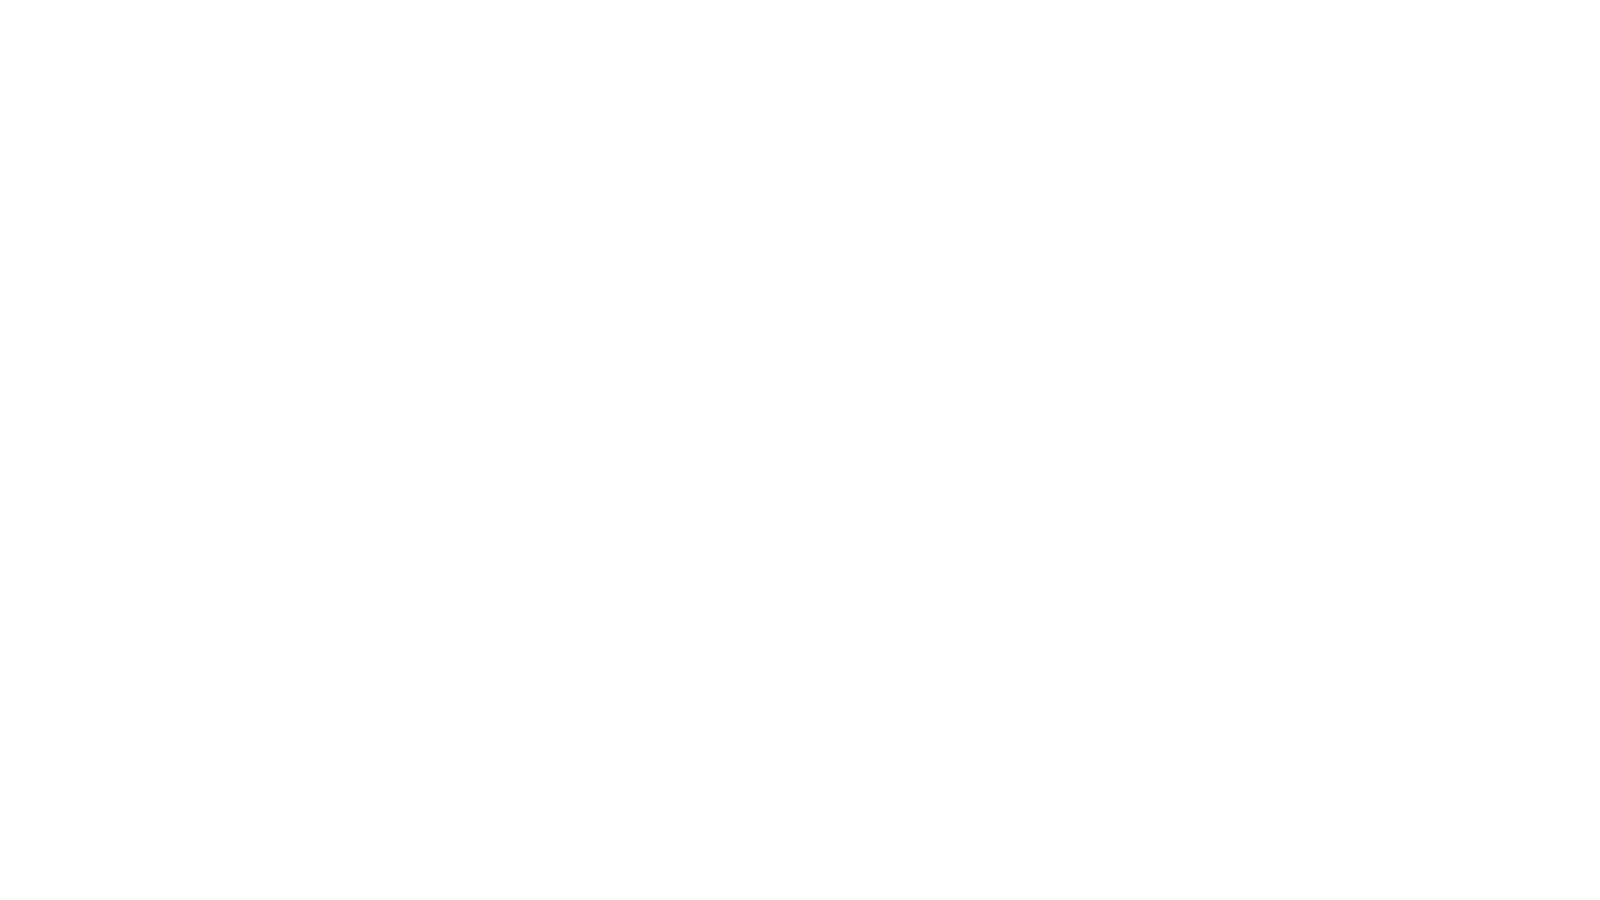 Fonte Milão – São Paulo
Olympio Augusto Ribeiro

Fonte Milão - São Paulo - Avenida República do Líbano - Moema, São Paulo - SP, Brasil

A Fonte Milão – São Paulo foi erguida em 1962 como uma doação da Prefeitura de Milão, para a Cidade de São Paulo, em comemoração pelo título de “cidades gêmeas”. As estátuas ‘A Noite’, ‘O Dia’, ‘O Crepúsculo’ e ‘A Aurora’ são réplicas de esculturas de Michelângelo, executadas para a capela dos Medici em Florença, Itália.

Em 2004 o arquiteto restaurador, Olympio Augusto Ribeiro, foi contratado pela Prefeitura de Milão, através do Istituto Italiano di Cultura de San Paolo, para restauração e requalificação da fonte e conjunto escultórico. Durante a obra o sistema hidráulico foi totalmente refeito, com construção de nova ‘casa de bomba’ integrada ao paisagismo, instalada nova iluminação monumental e restauradas as esculturas que se apresentavam bastante desgastadas e com perda de partes.

A fonte foi inaugurada em 17 de junho de 2004 pela então prefeita Marta Suplicy e representantes da prefeitura de Milão, como parte da comemoração dos 450 anos da cidade de são paulo.

Fonte - https://arteforadomuseu.com.br/fonte-milao-sao-paulo/